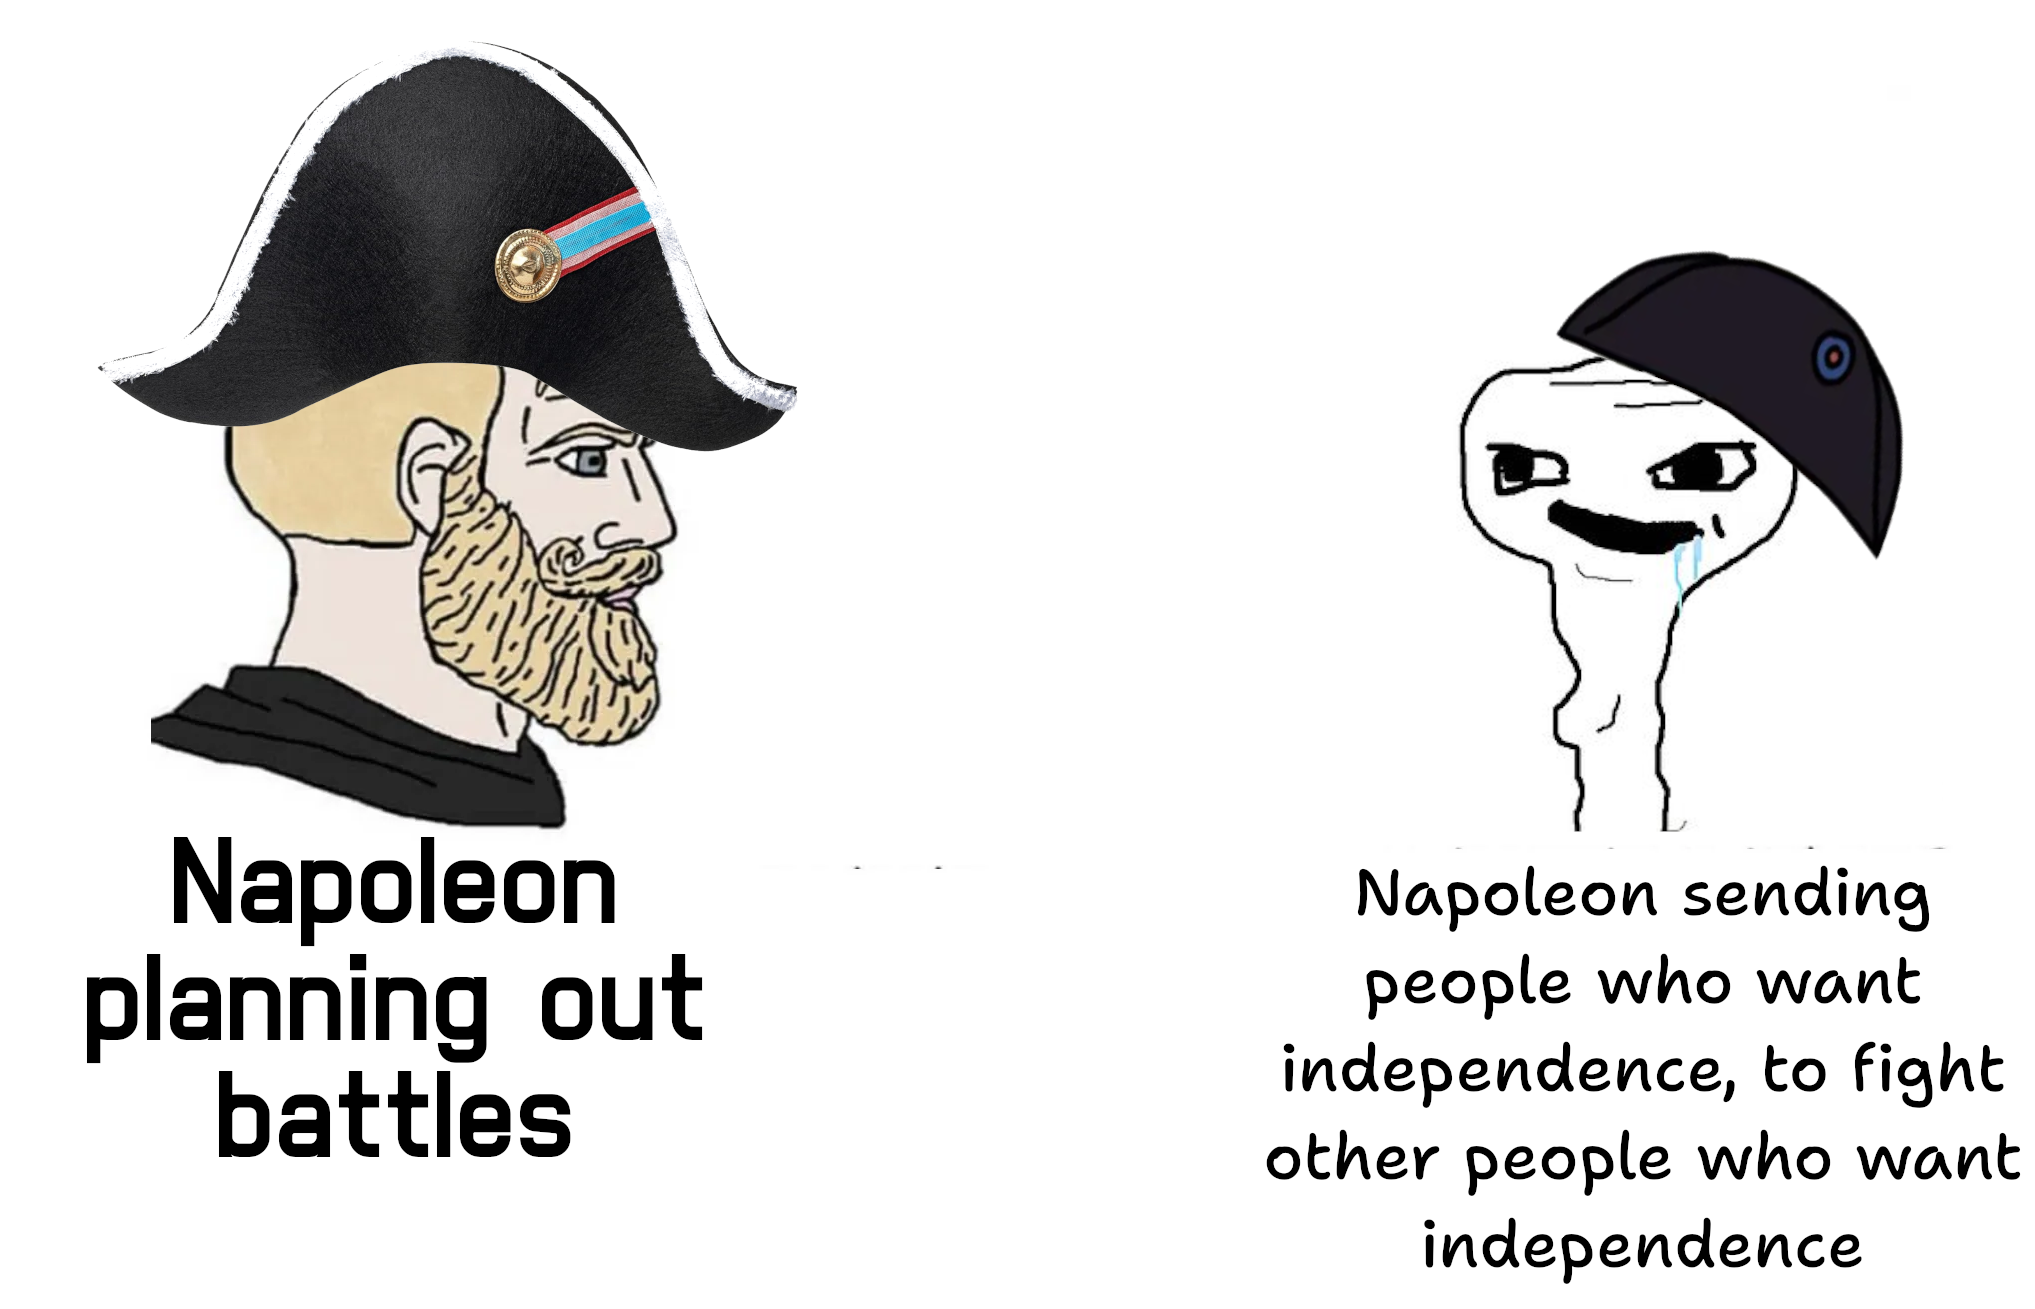 Not his brightest idea: Napoleon and Haiti